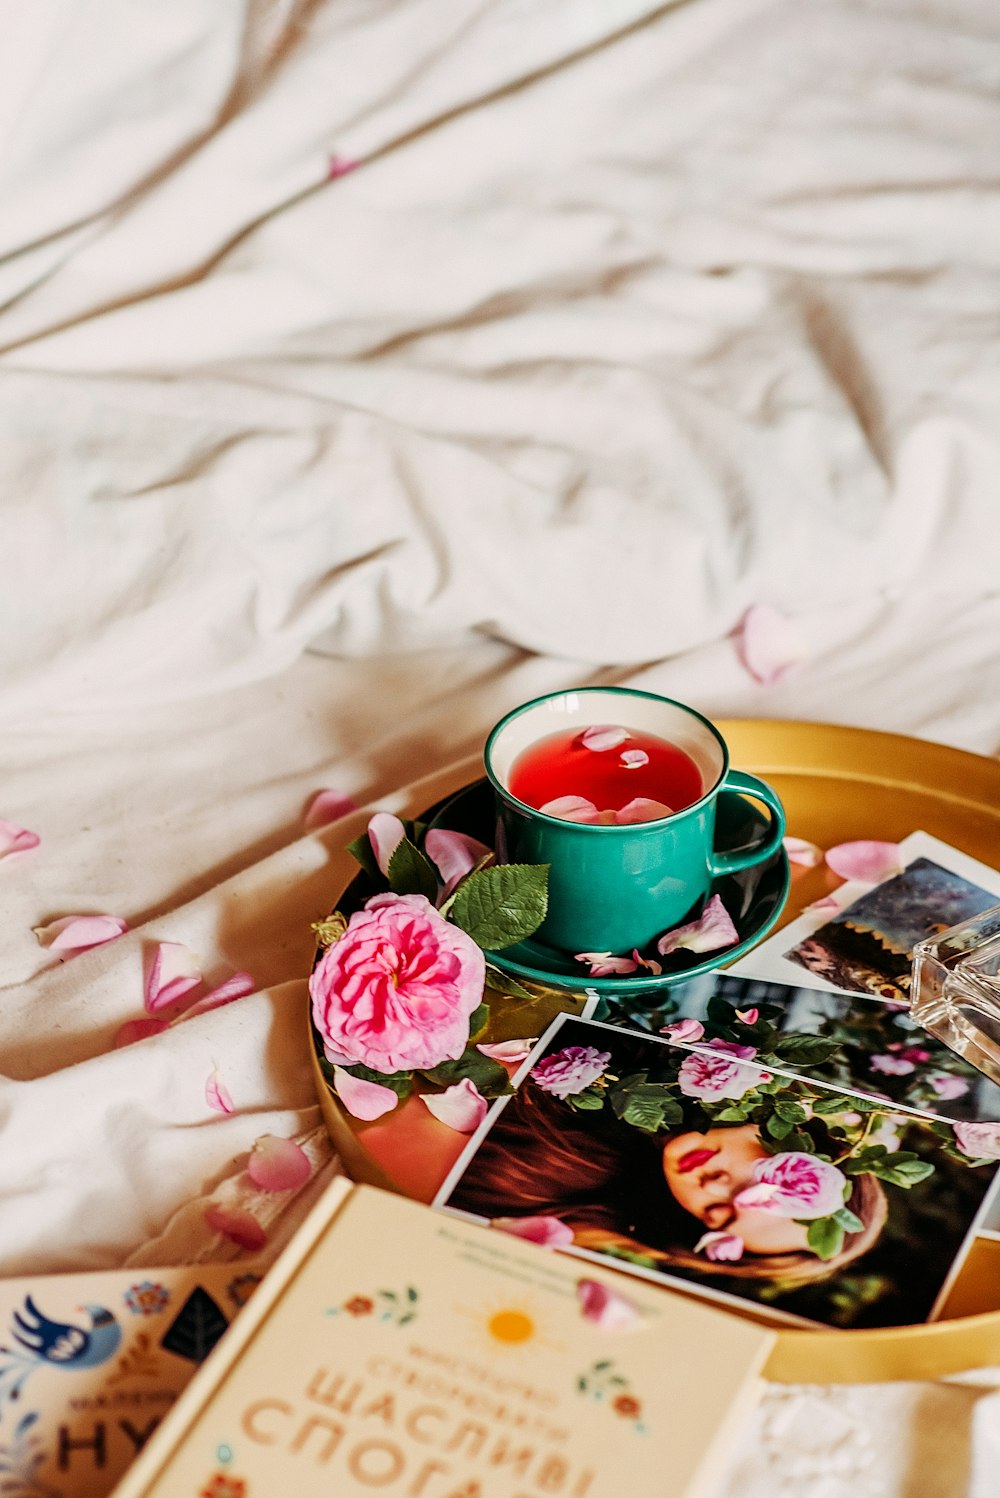 pink rose beside green ceramic mug on brown wooden tray